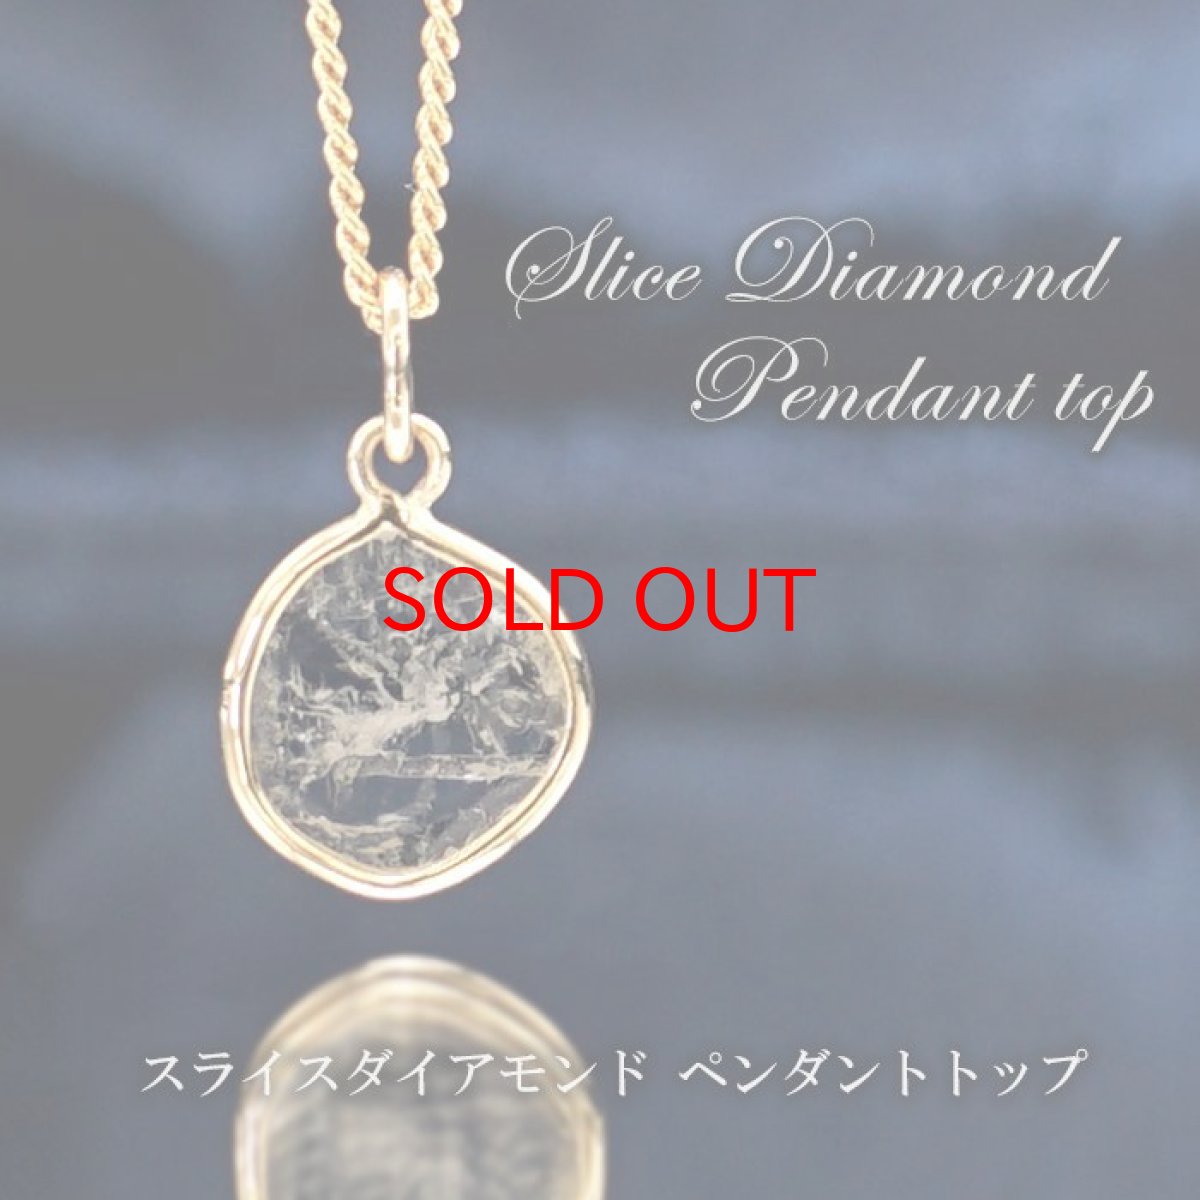 画像1: 【一点物】 スライスダイヤモンド ペンダントトップ diamond アフリカ産 K18 天然石 パワーストーン (1)